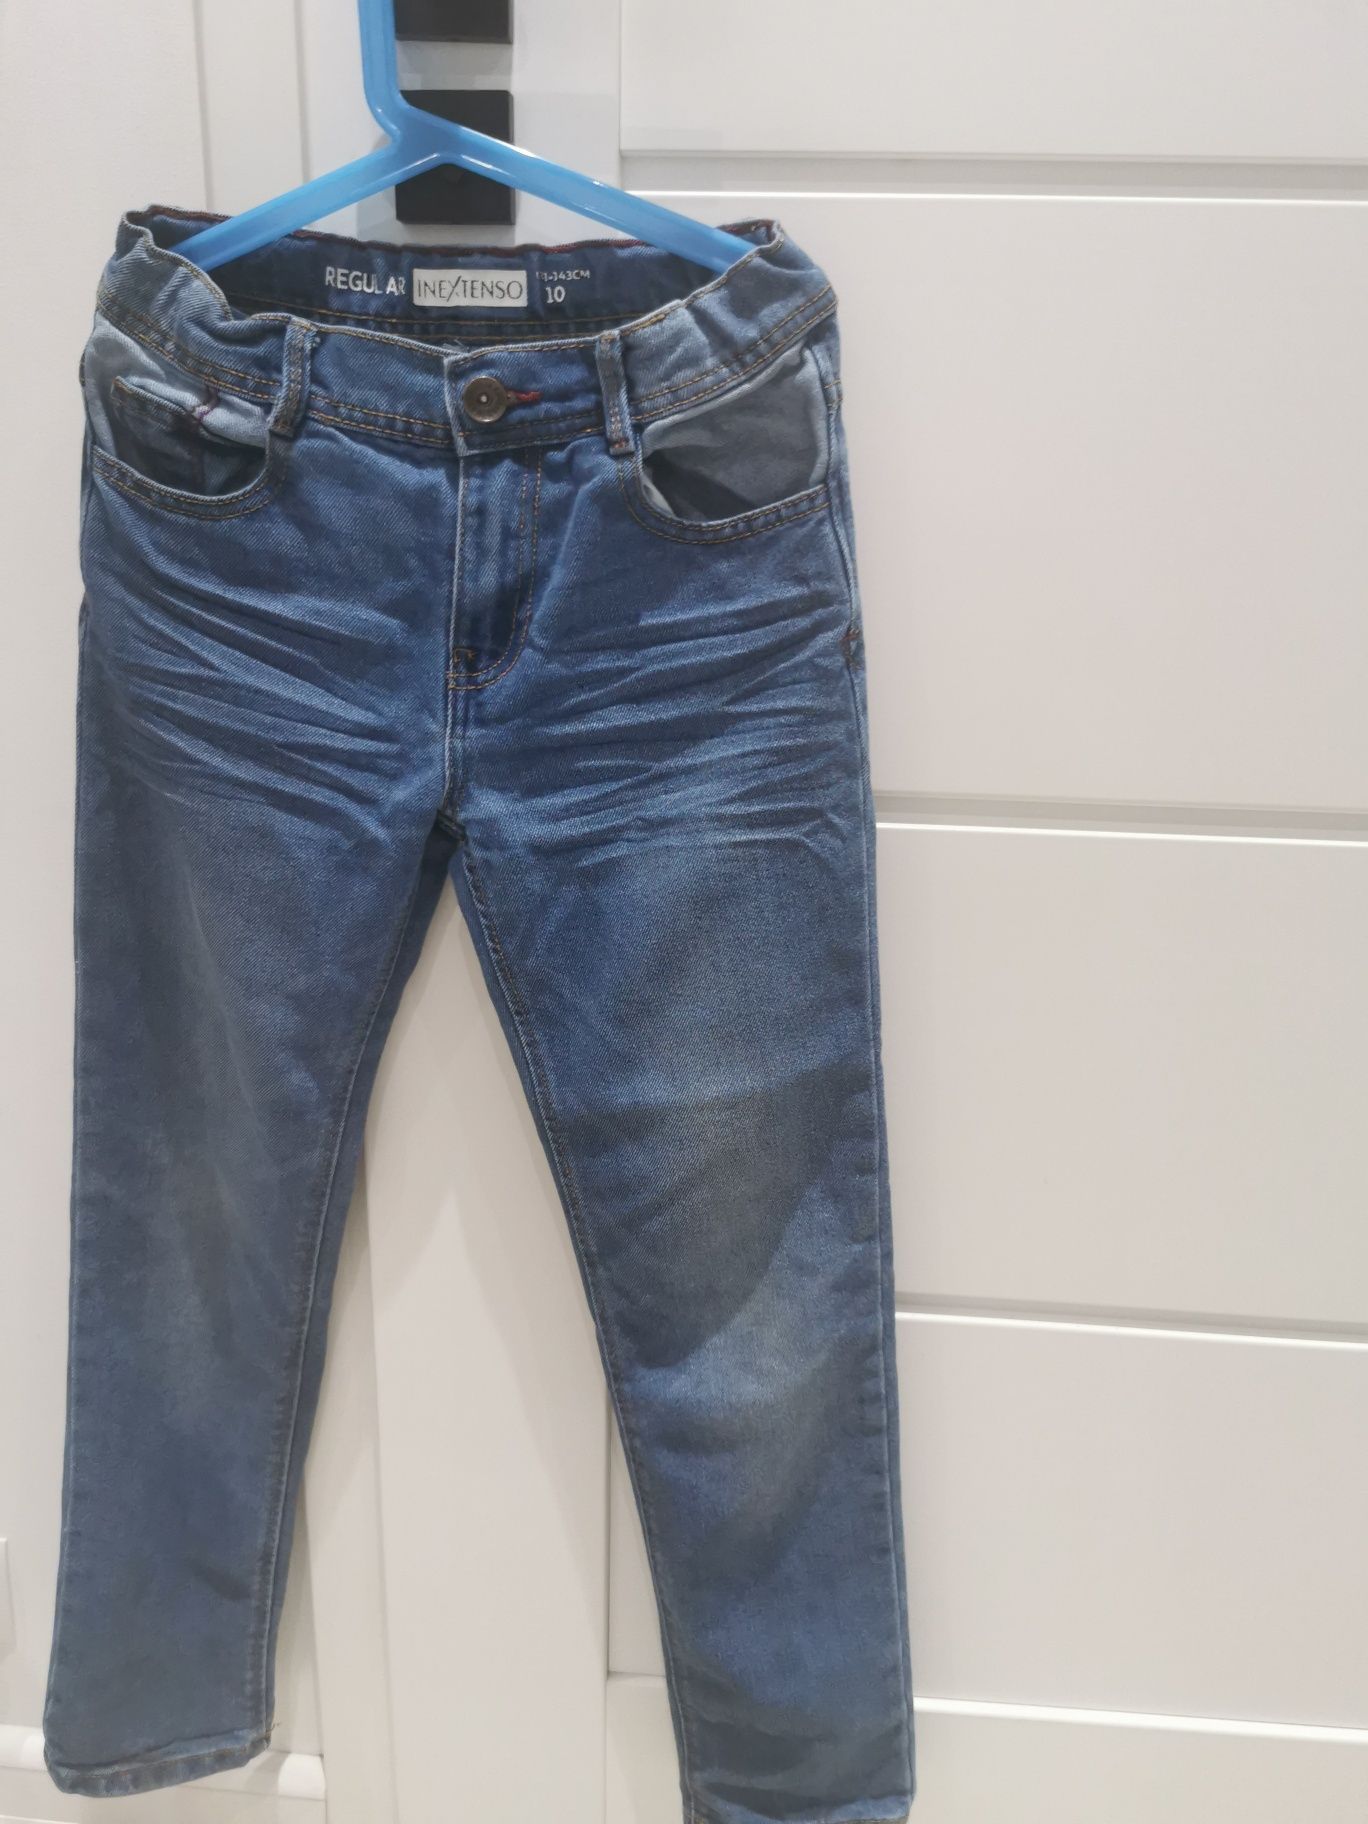 Spodnie jeansowe chłopięce inextenso r. 146 cm